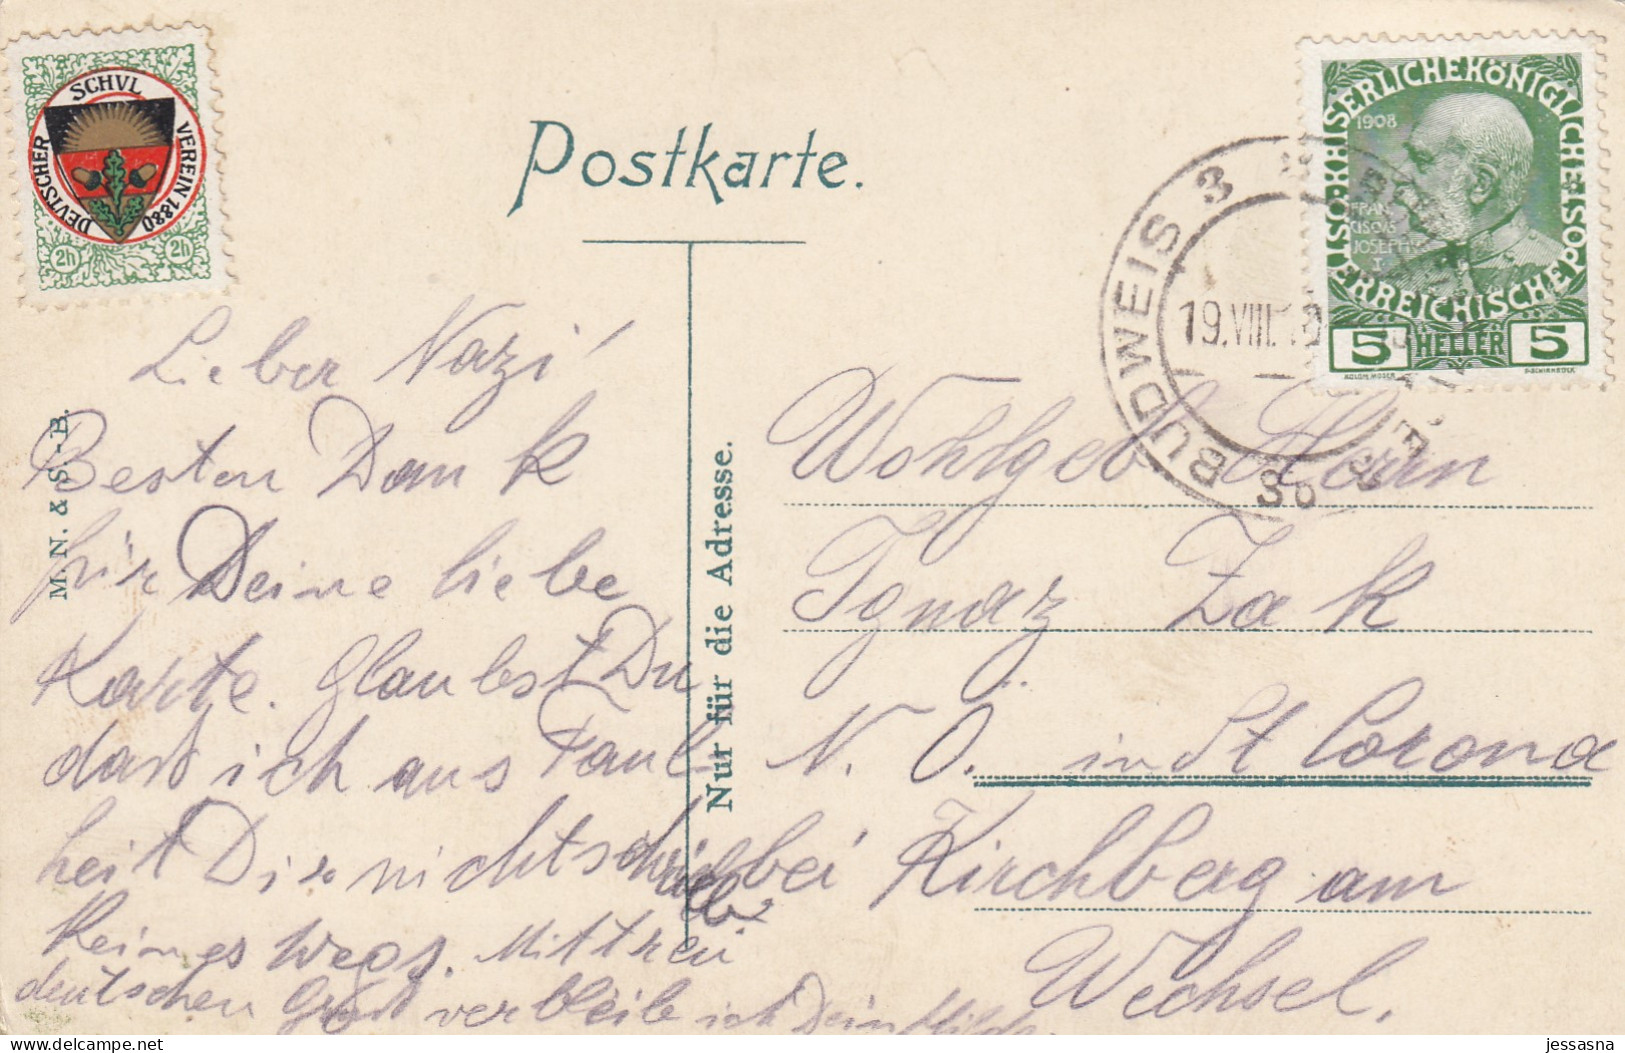 AK - Tschechien - BUDWEIS - Wienergasse Mit Dem Alten Patrizierhaus - 1910 - Schulverein - Czech Republic